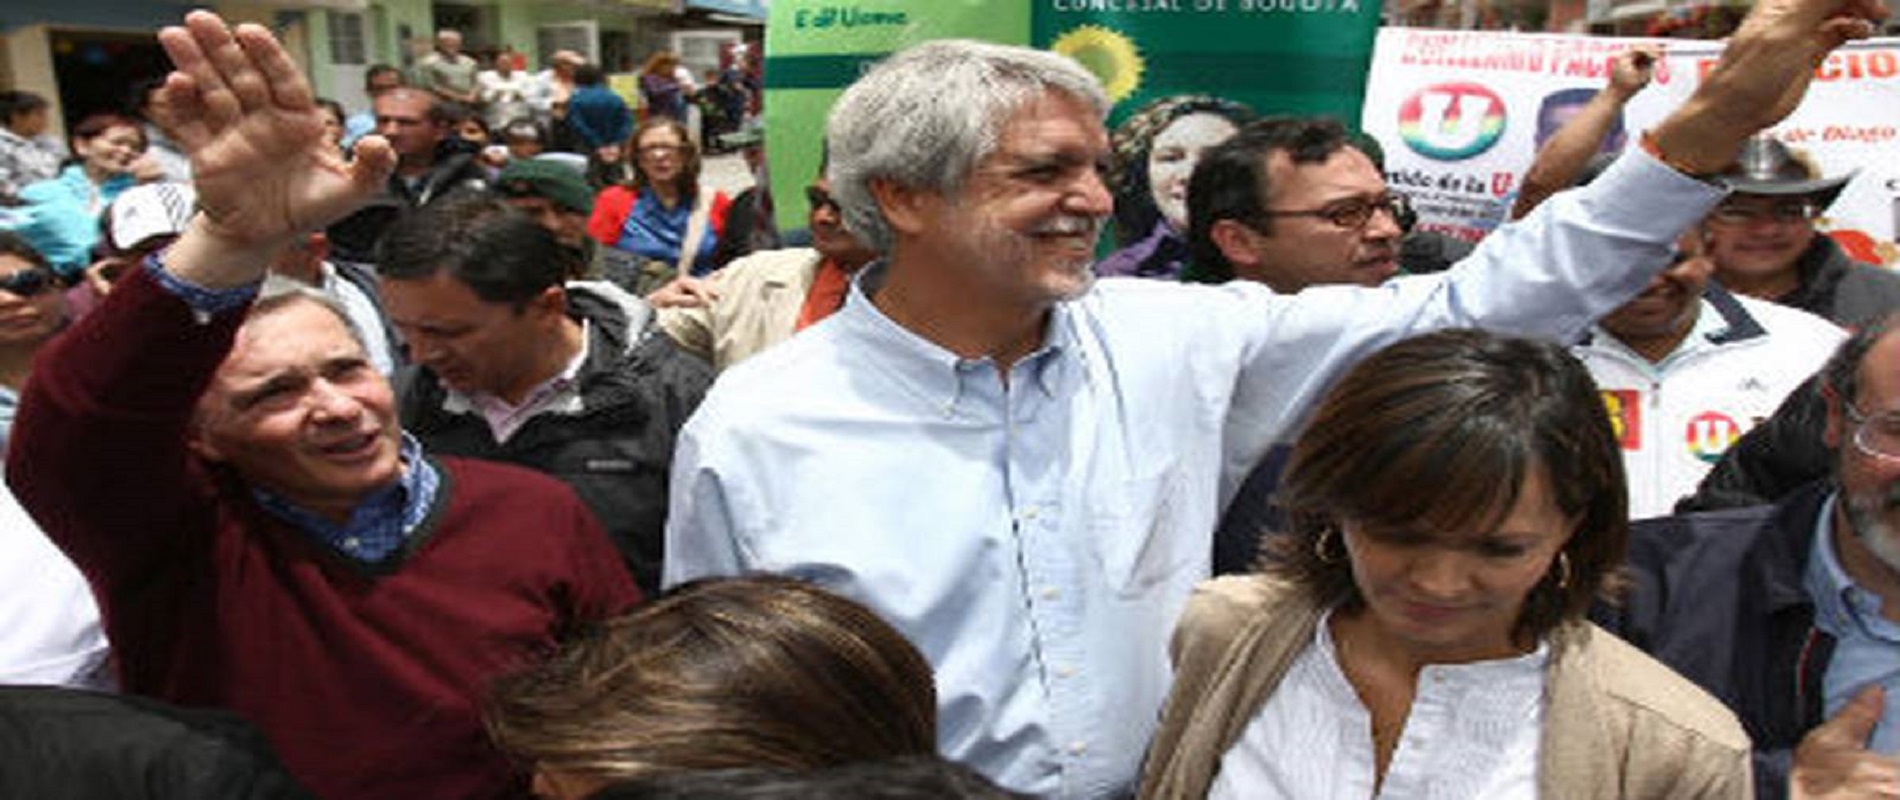 Uribe y Peñalosa en campaña por alcaldía 2011.
Crédito Revista Semana.